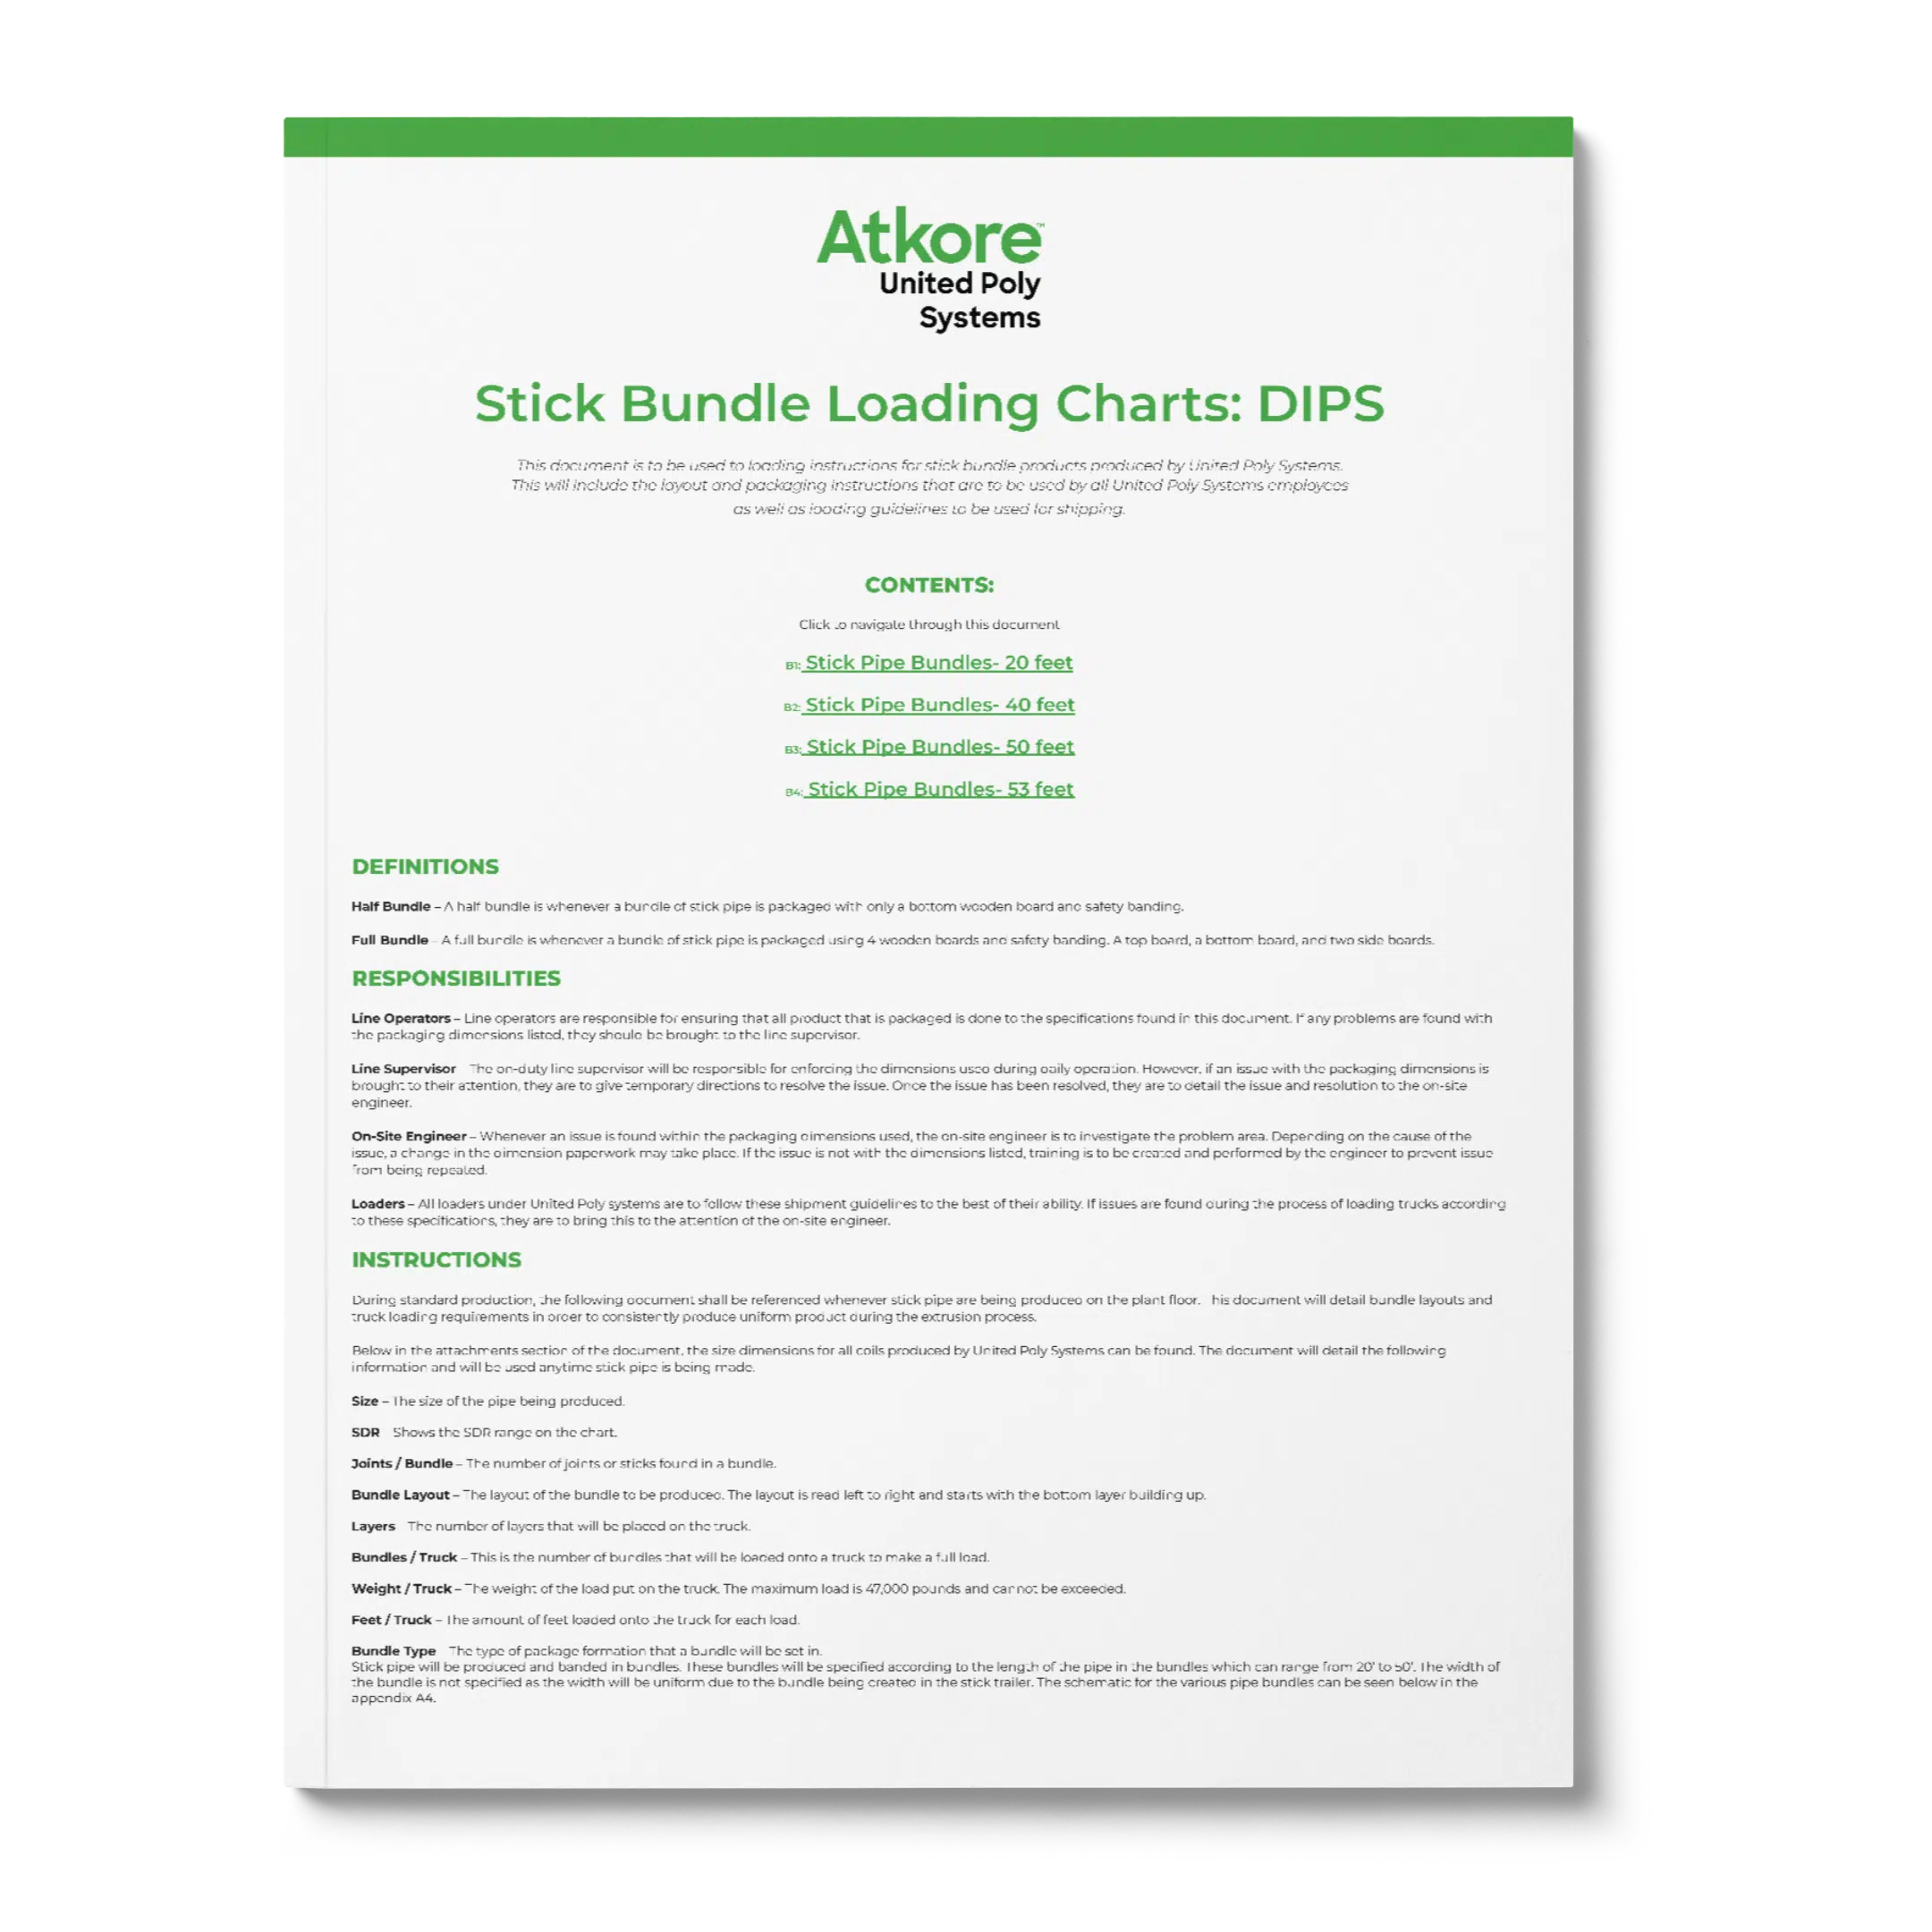 UPS Atkore_Stick Bundle Loading Charts_ DIPSTHUMB